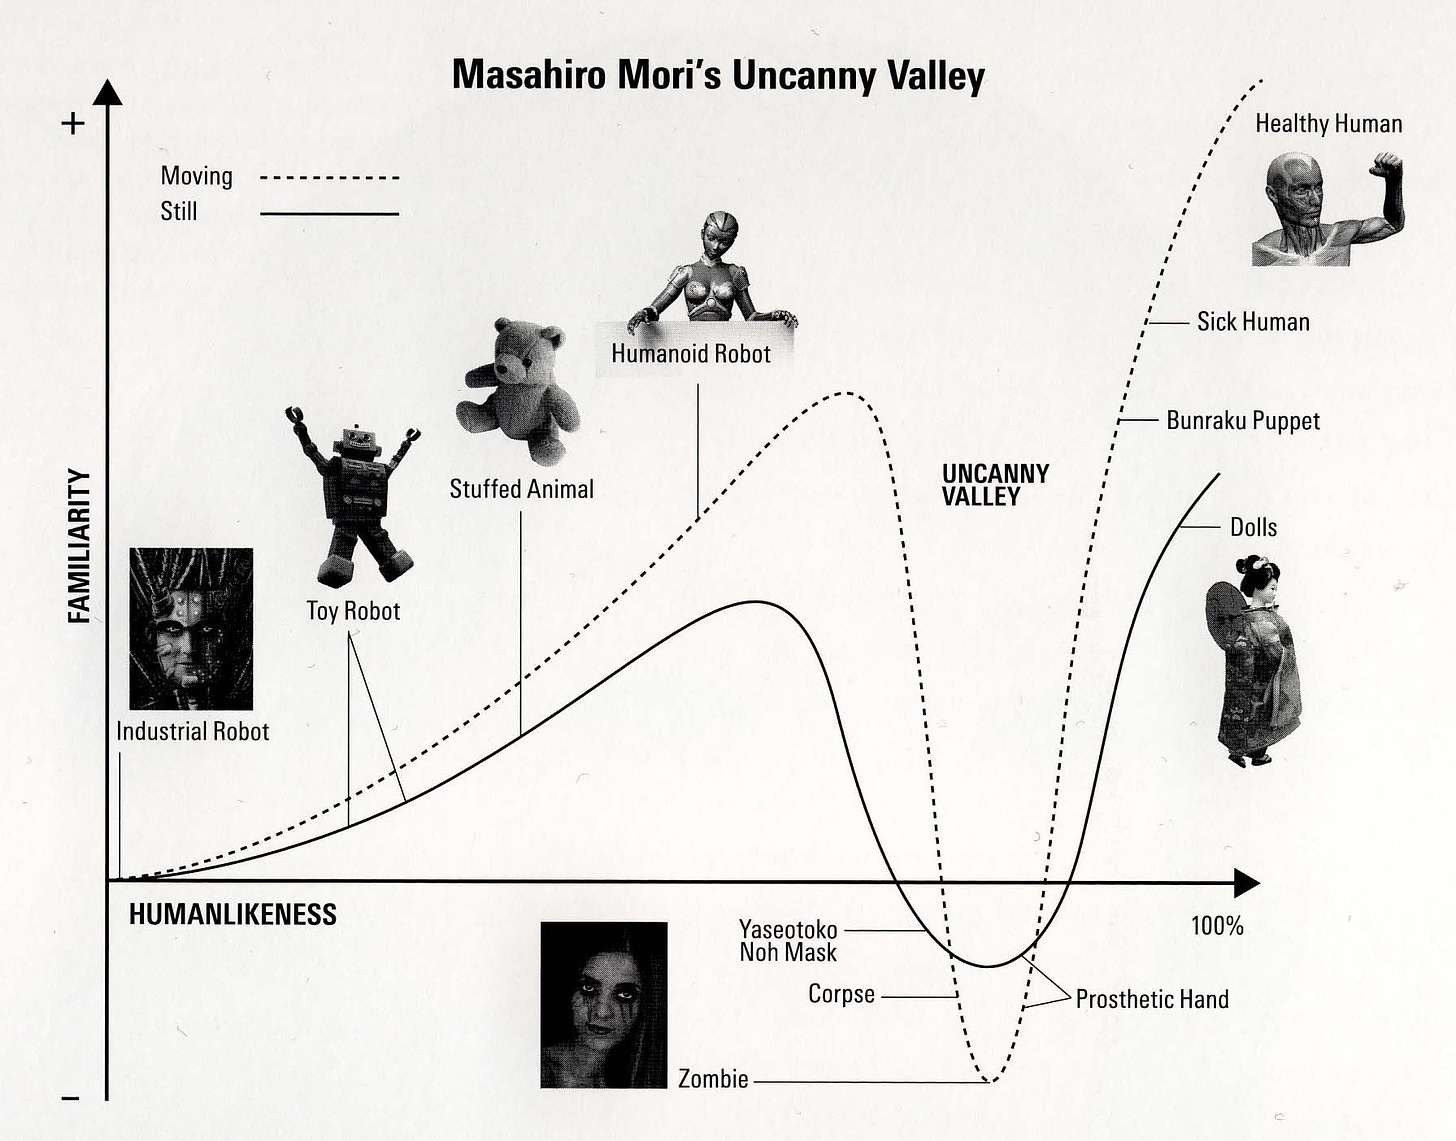 The uncanny valley theory of Masahiro Mori | The uncanny, Humanoid ...